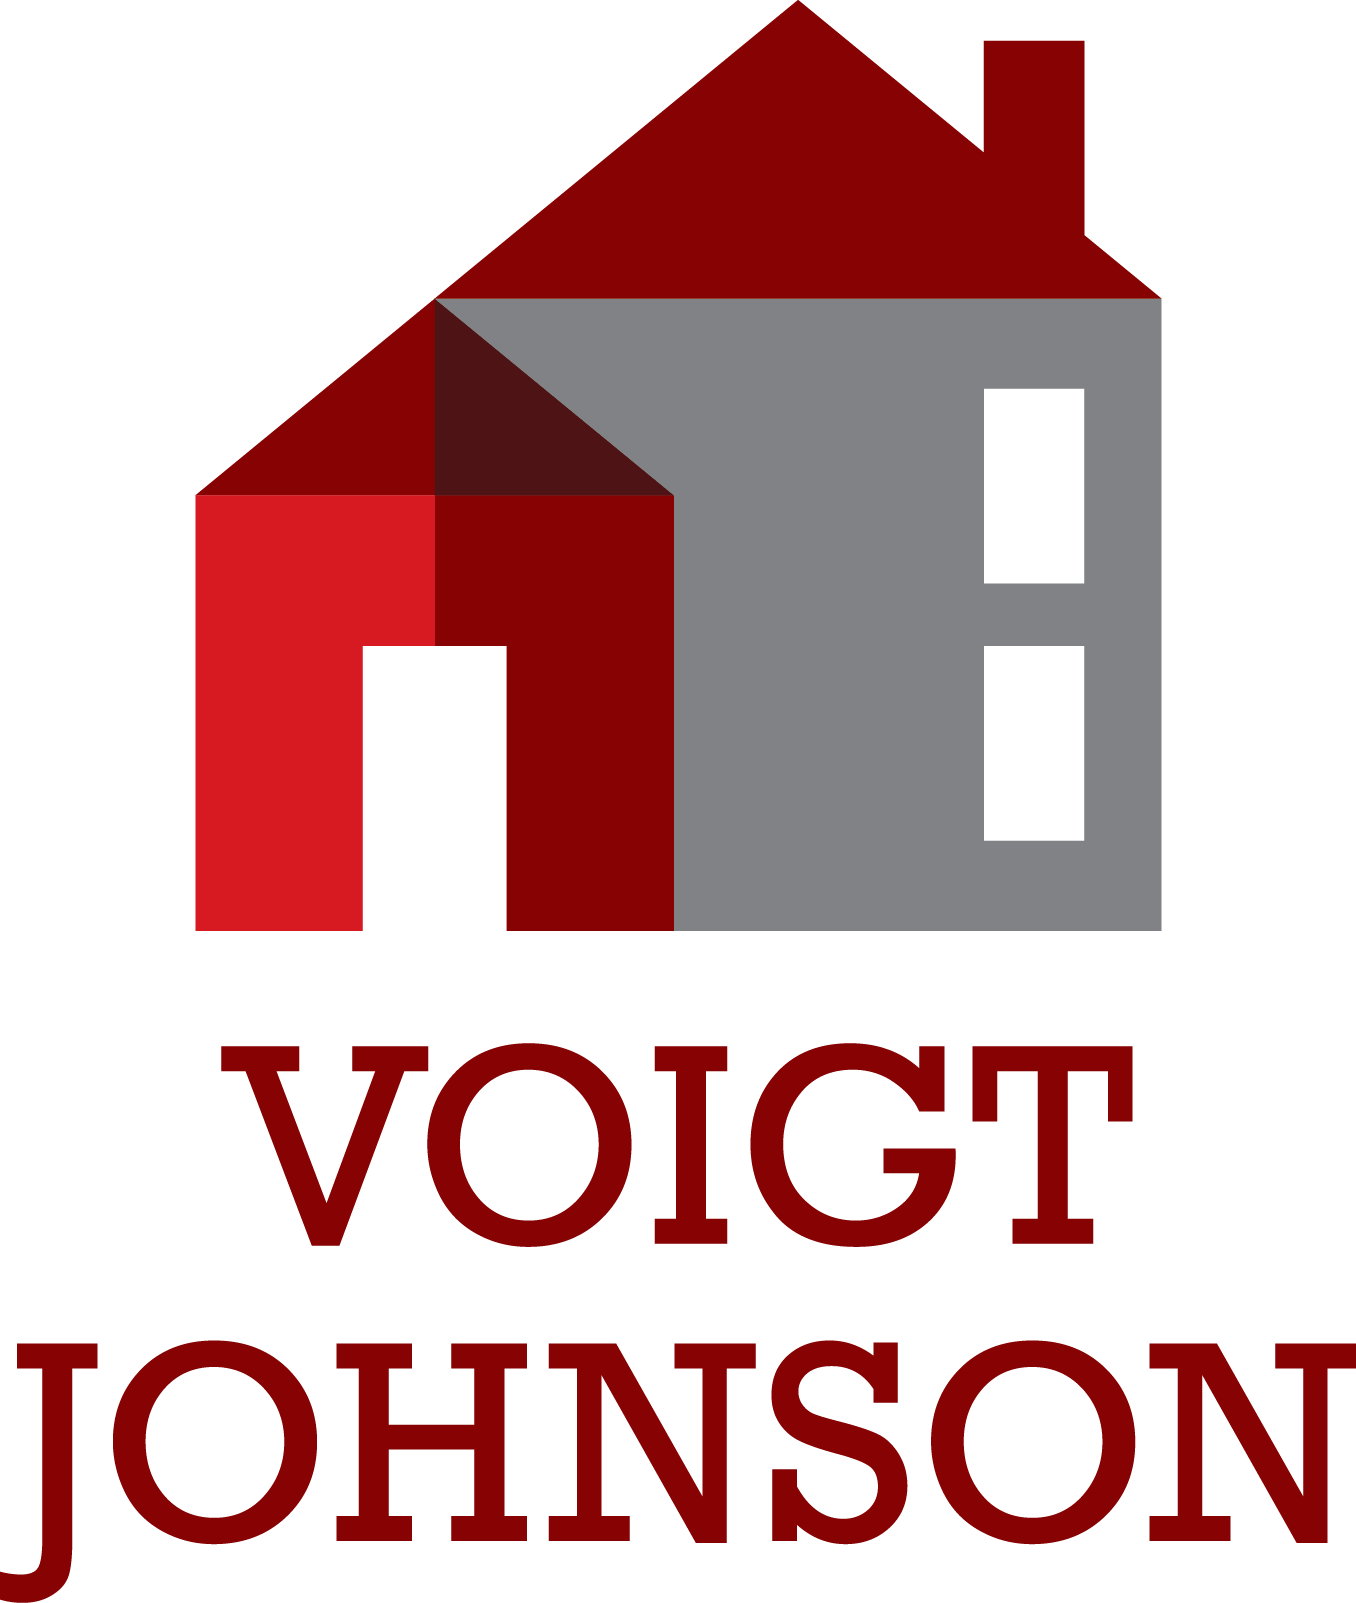 Voigt Johnson Real Estate